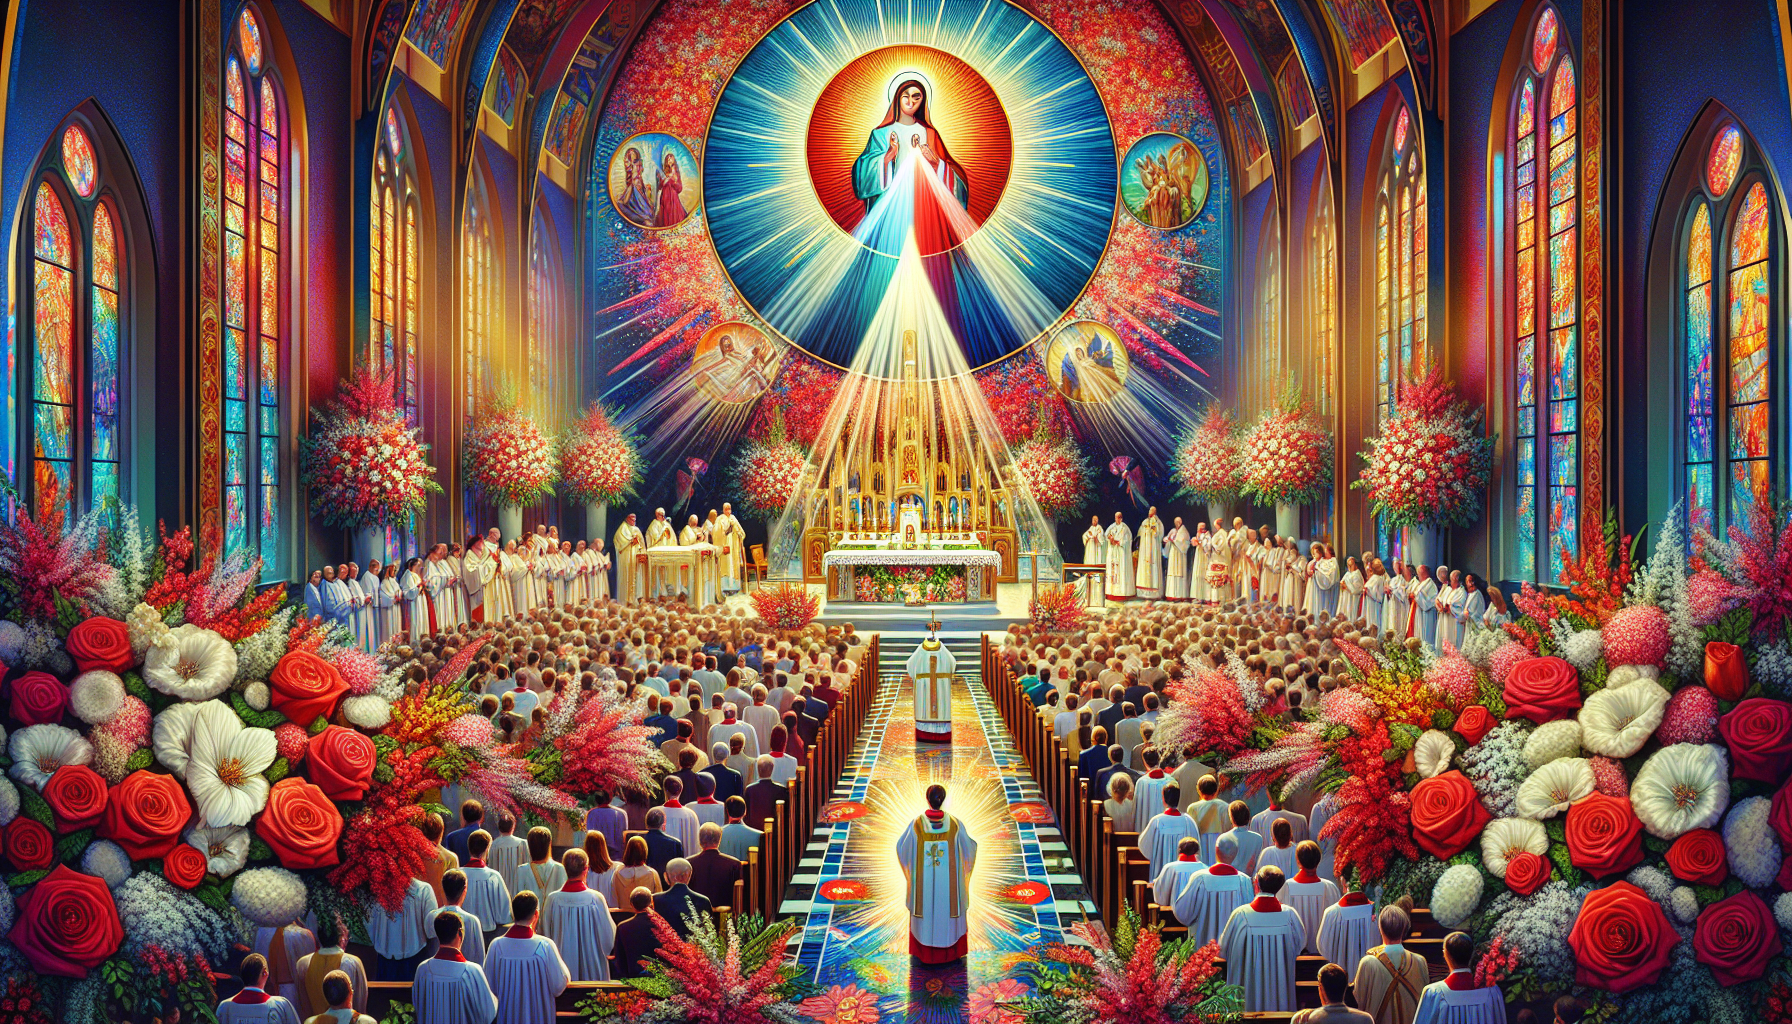 Una imagen vibrante de la celebración de la Fiesta de la Divina Misericordia en una iglesia decorada con flores blancas y rojas. Feligreses reunidos en oración, con un sacerdote celebrando una misa es